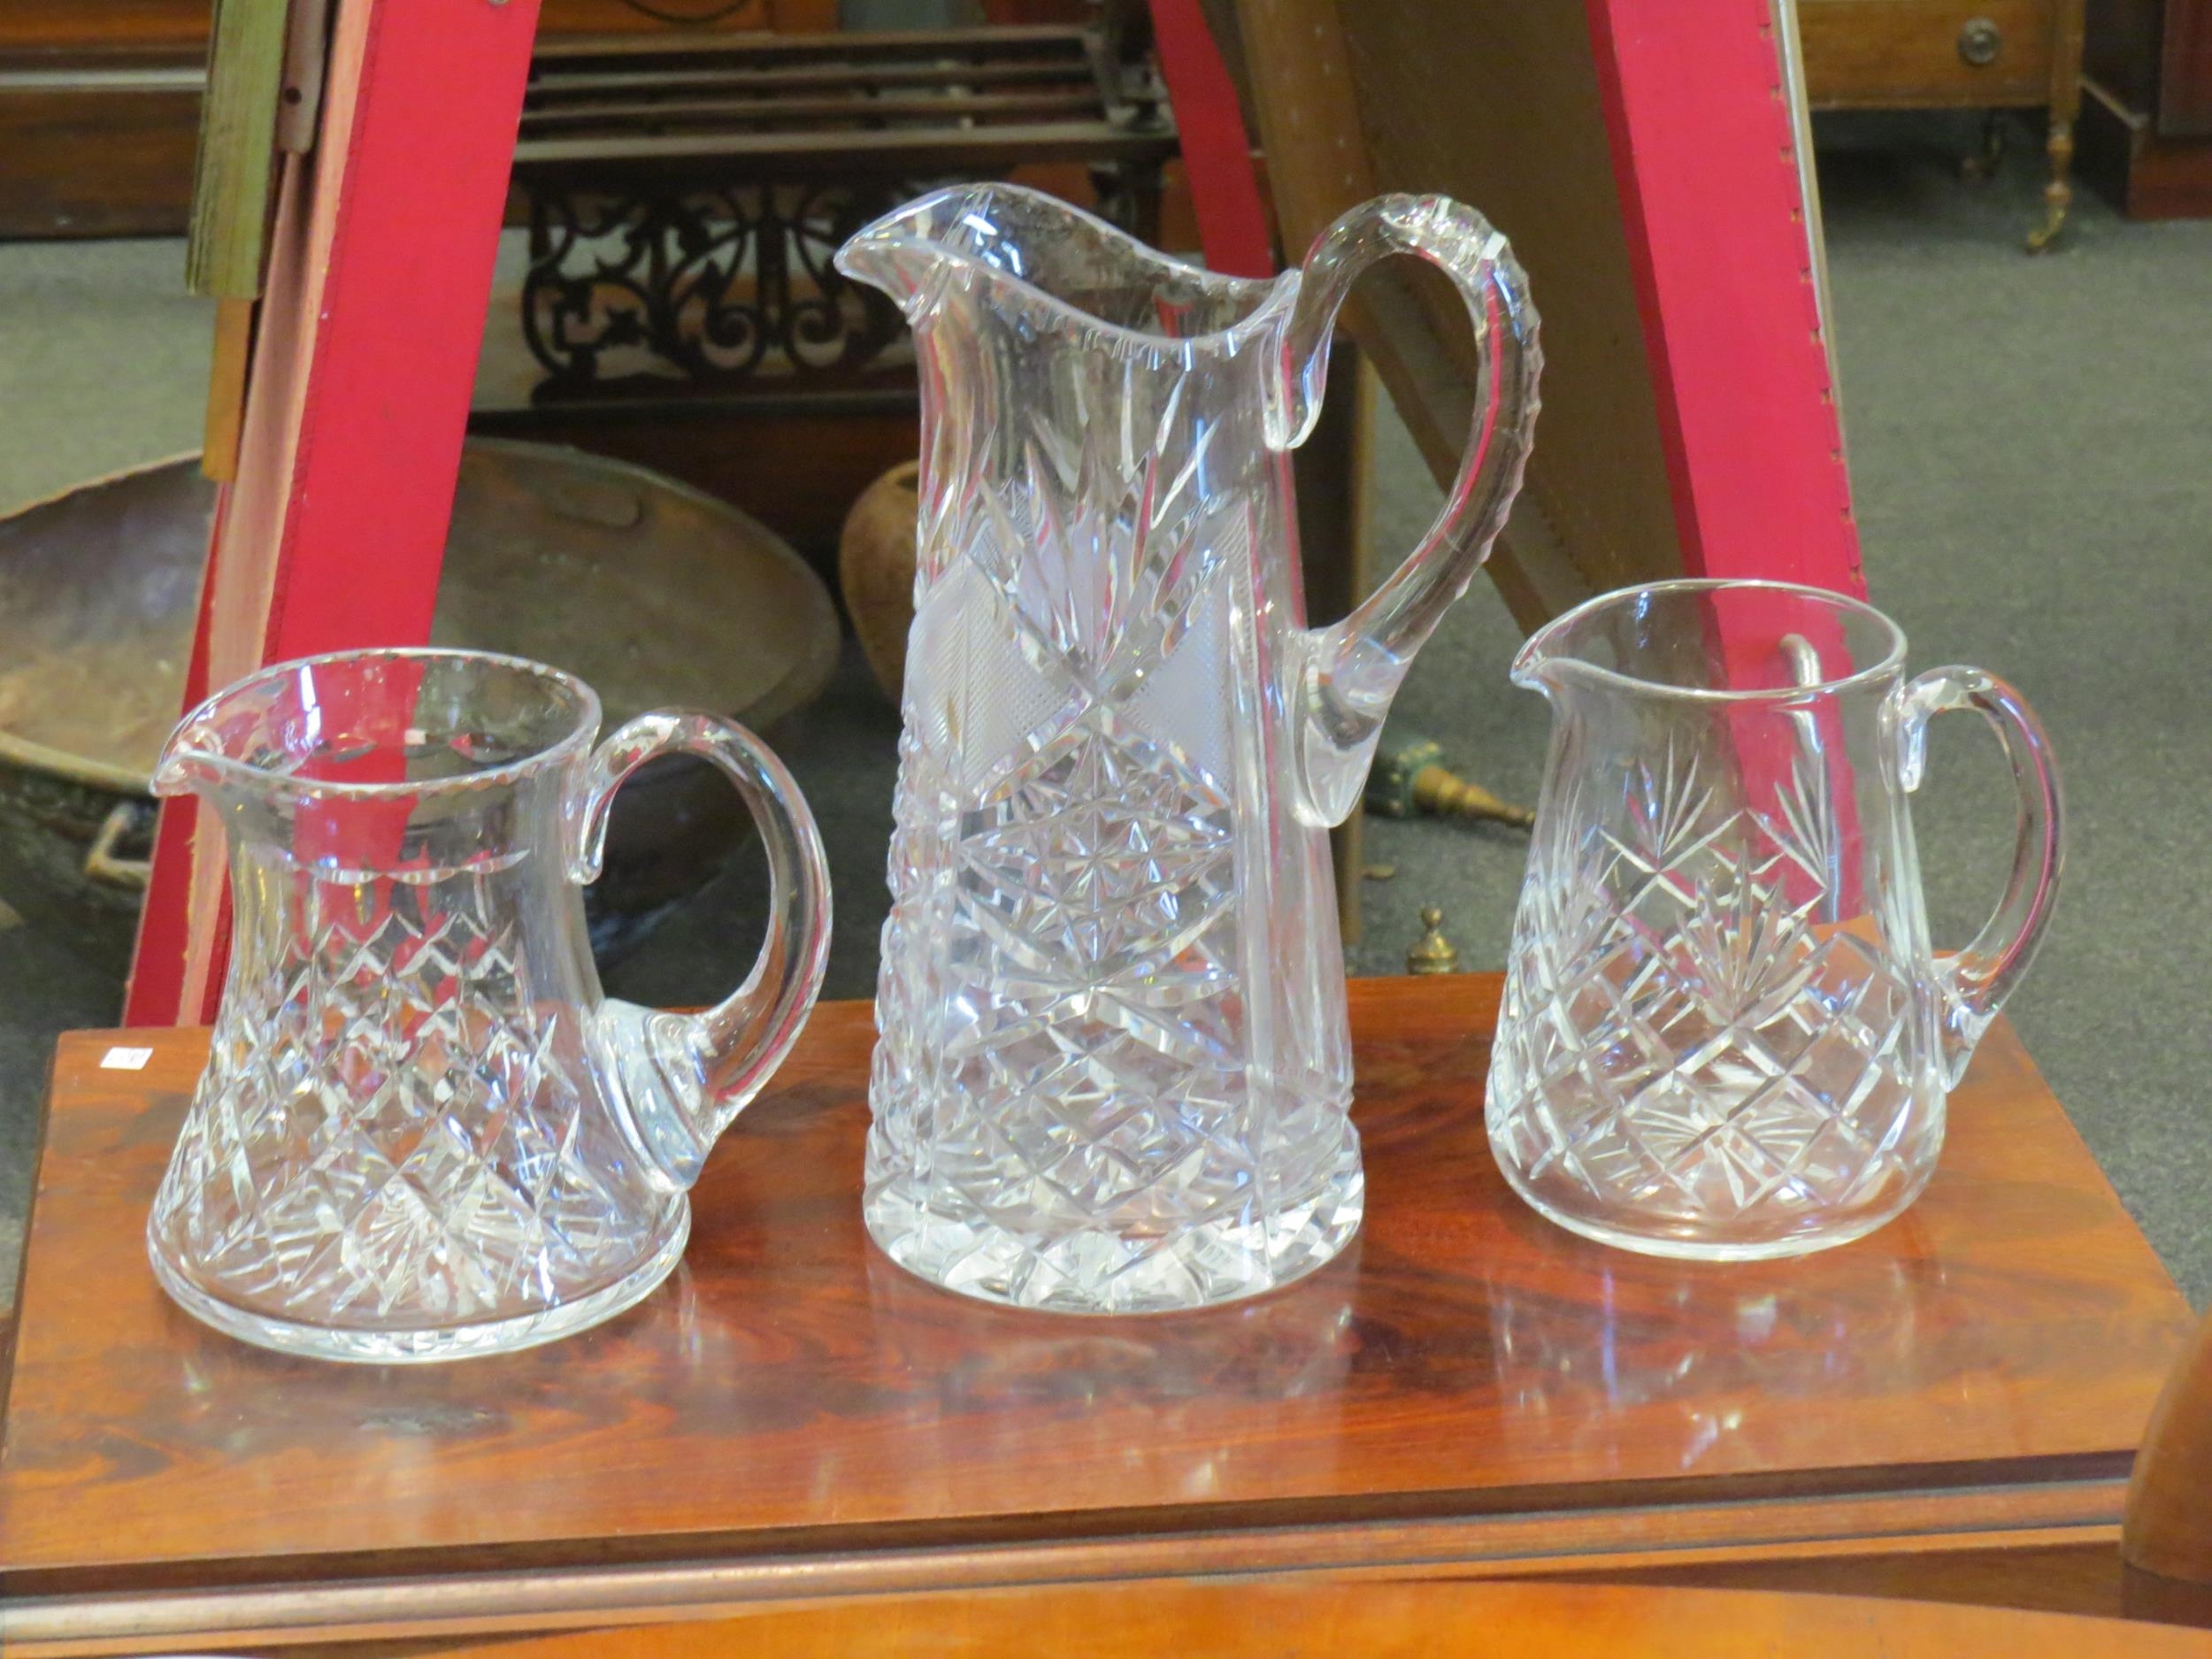 Three crystal jugs